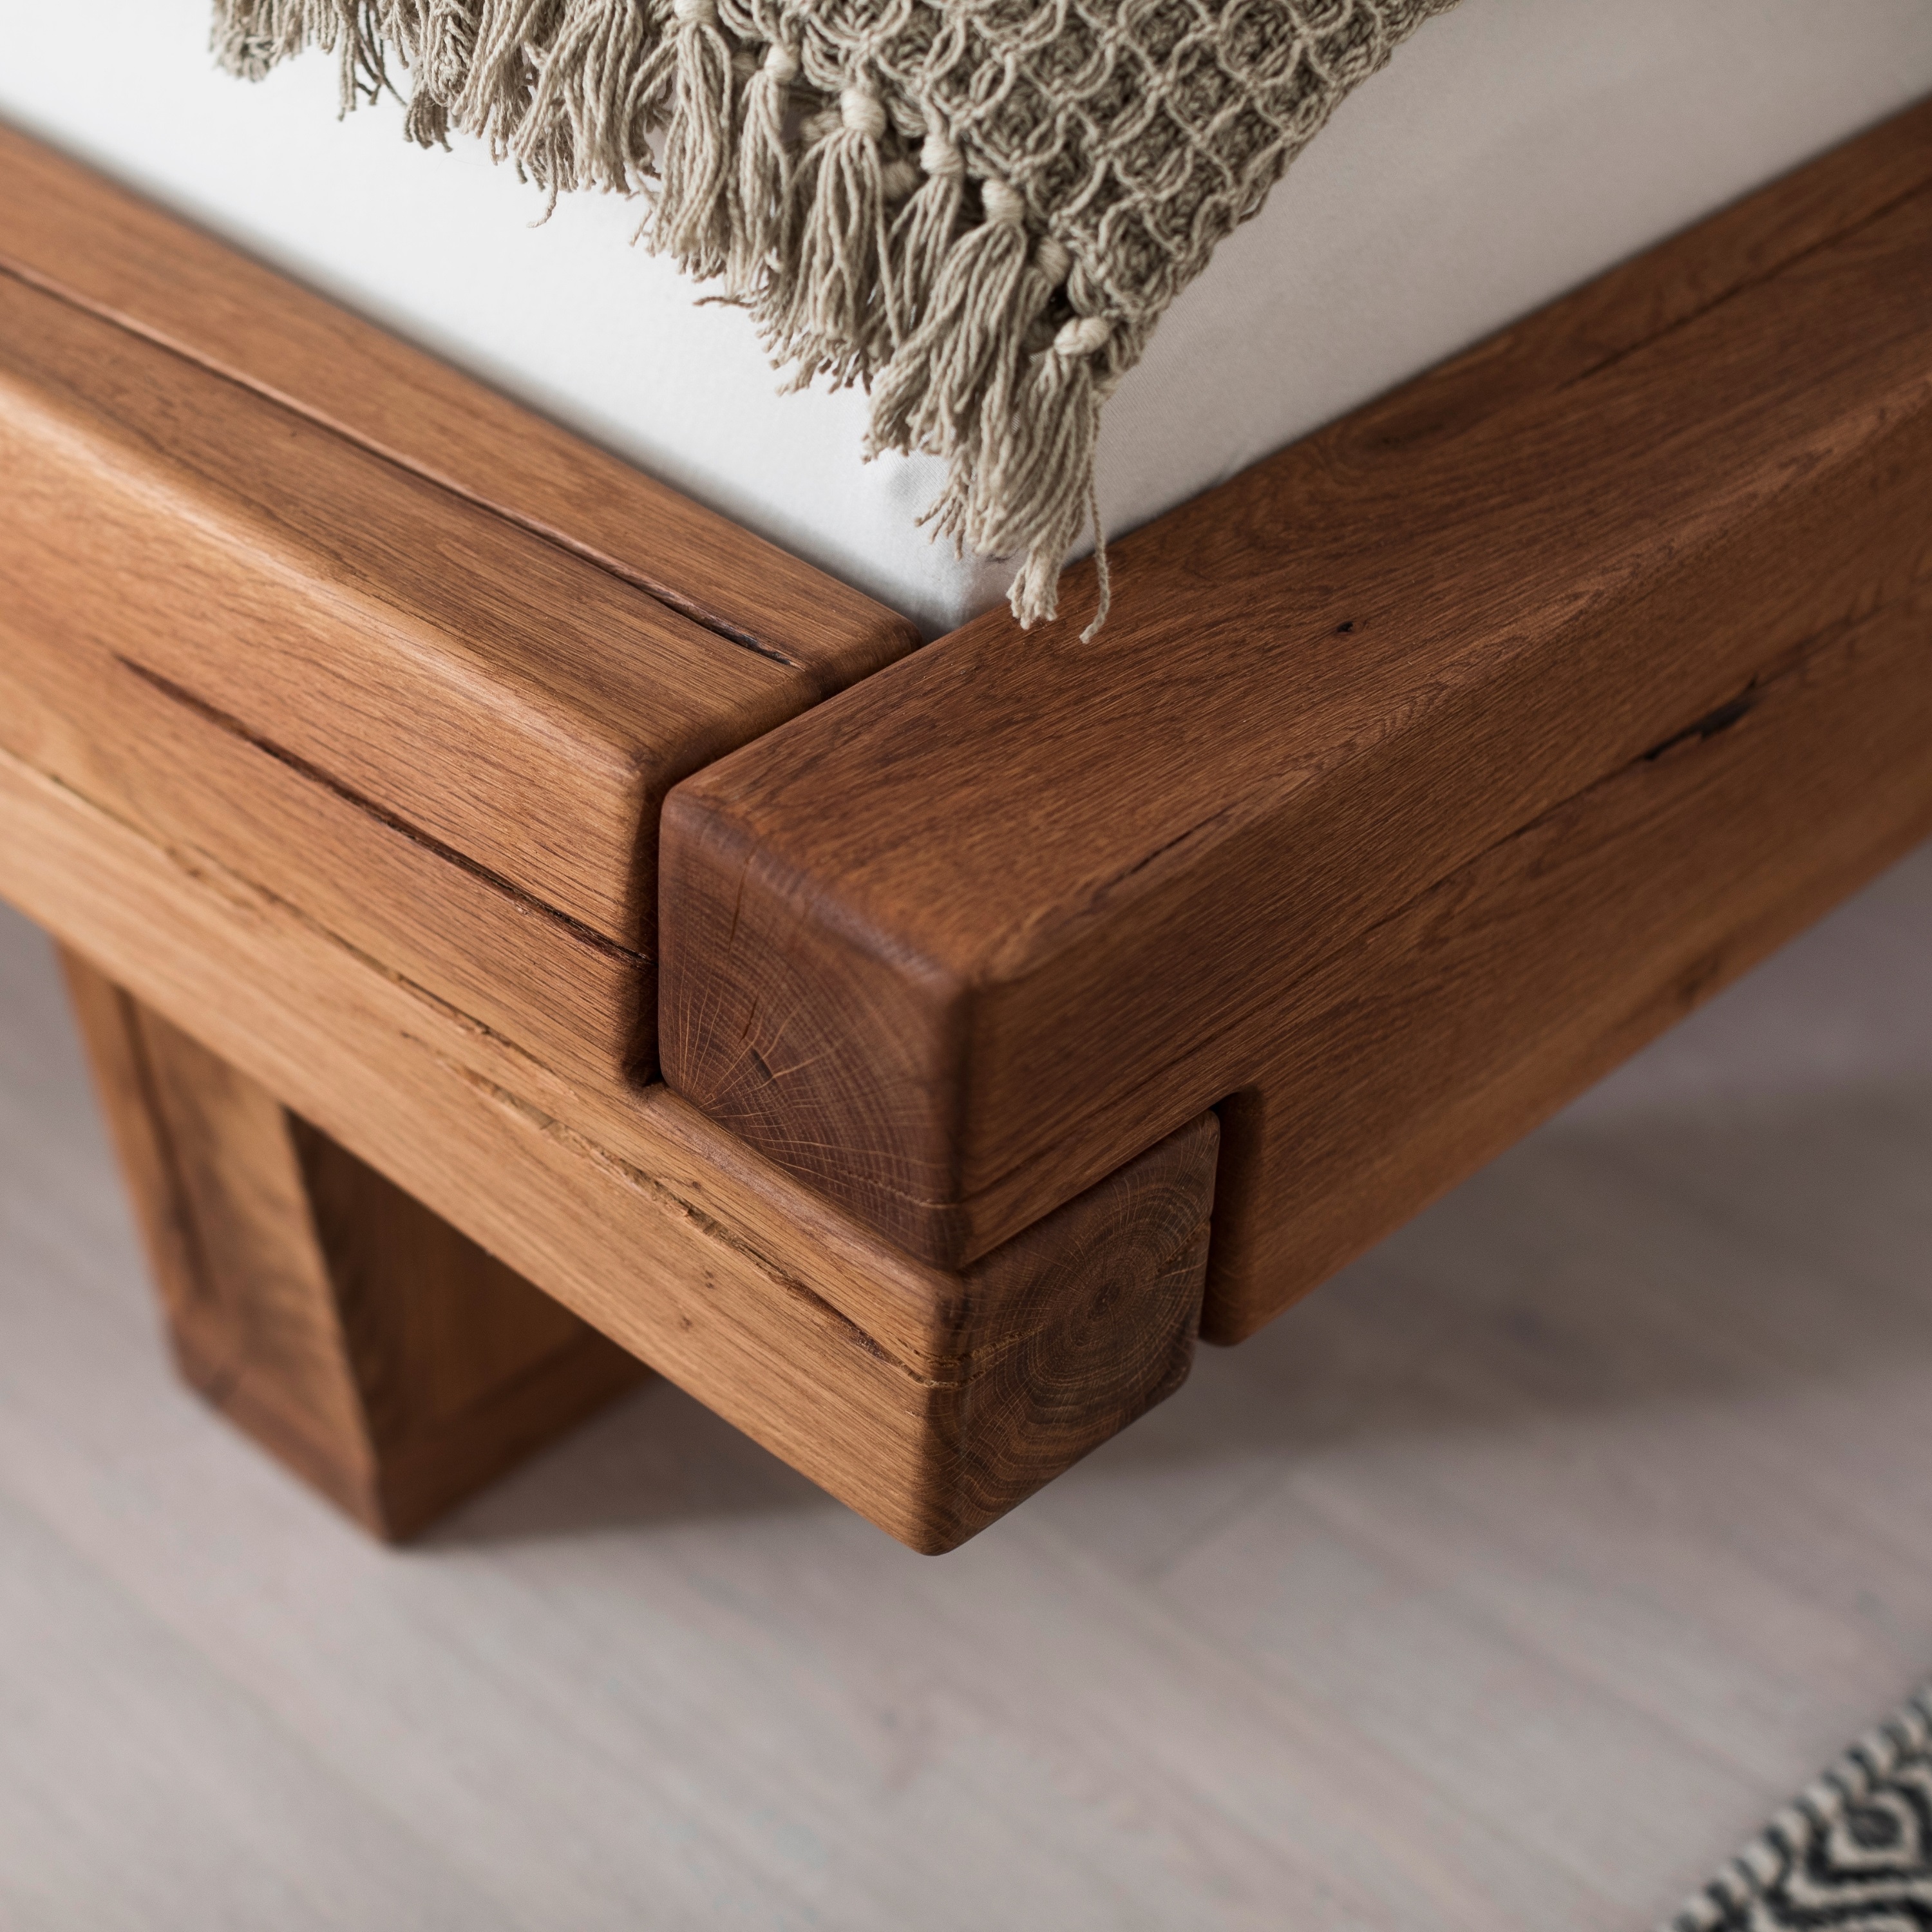 Bubema Mondera – Massivholz Balken-Bett mit Kopfteil, Holzfüße in Kufenform